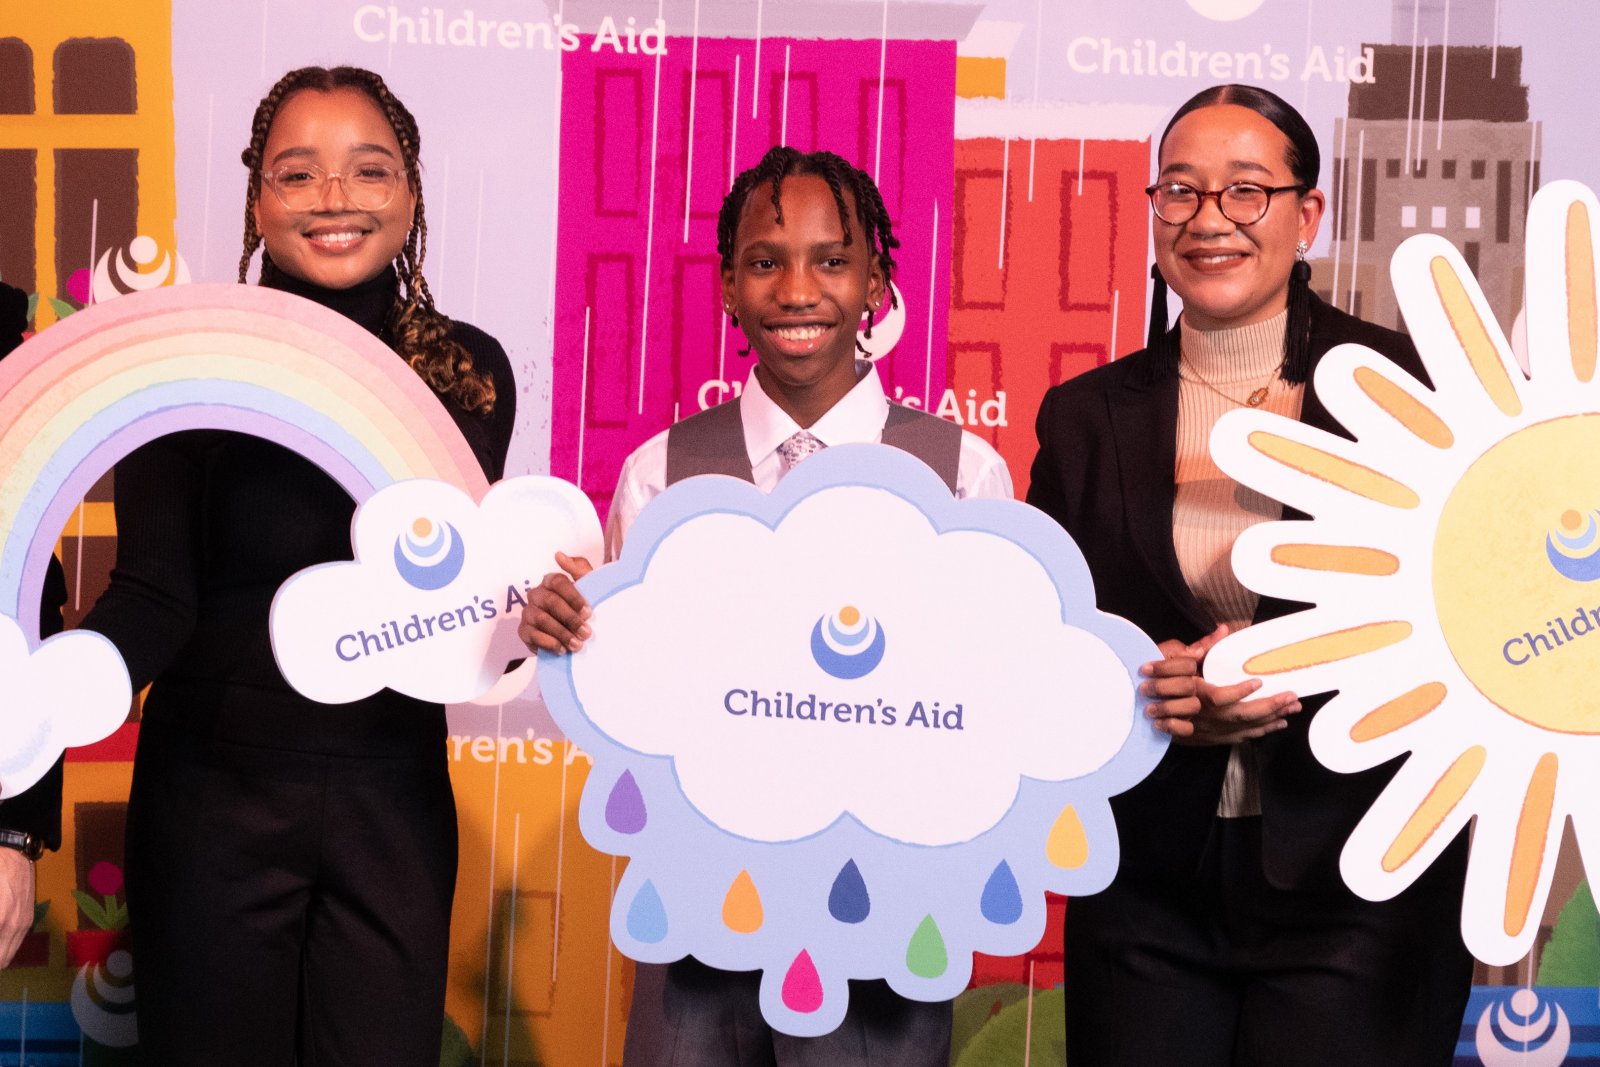 2021 Children's Aid Benefit